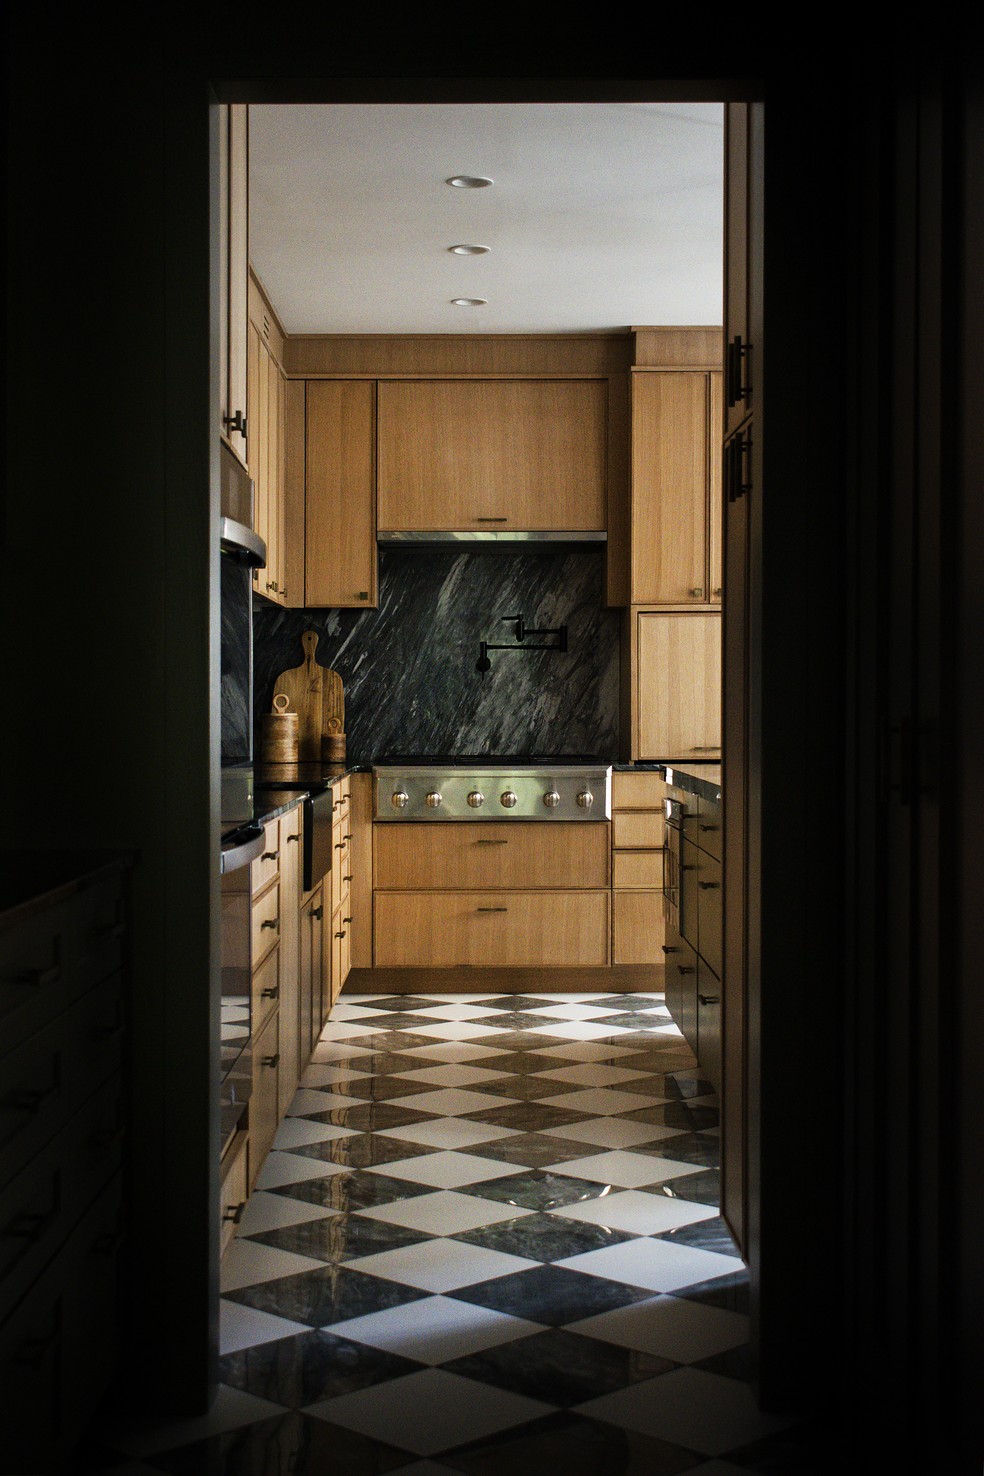 O piso quadriculado evoca uma atmosfera vintage na cozinha — Foto: Benedetto Rebecca